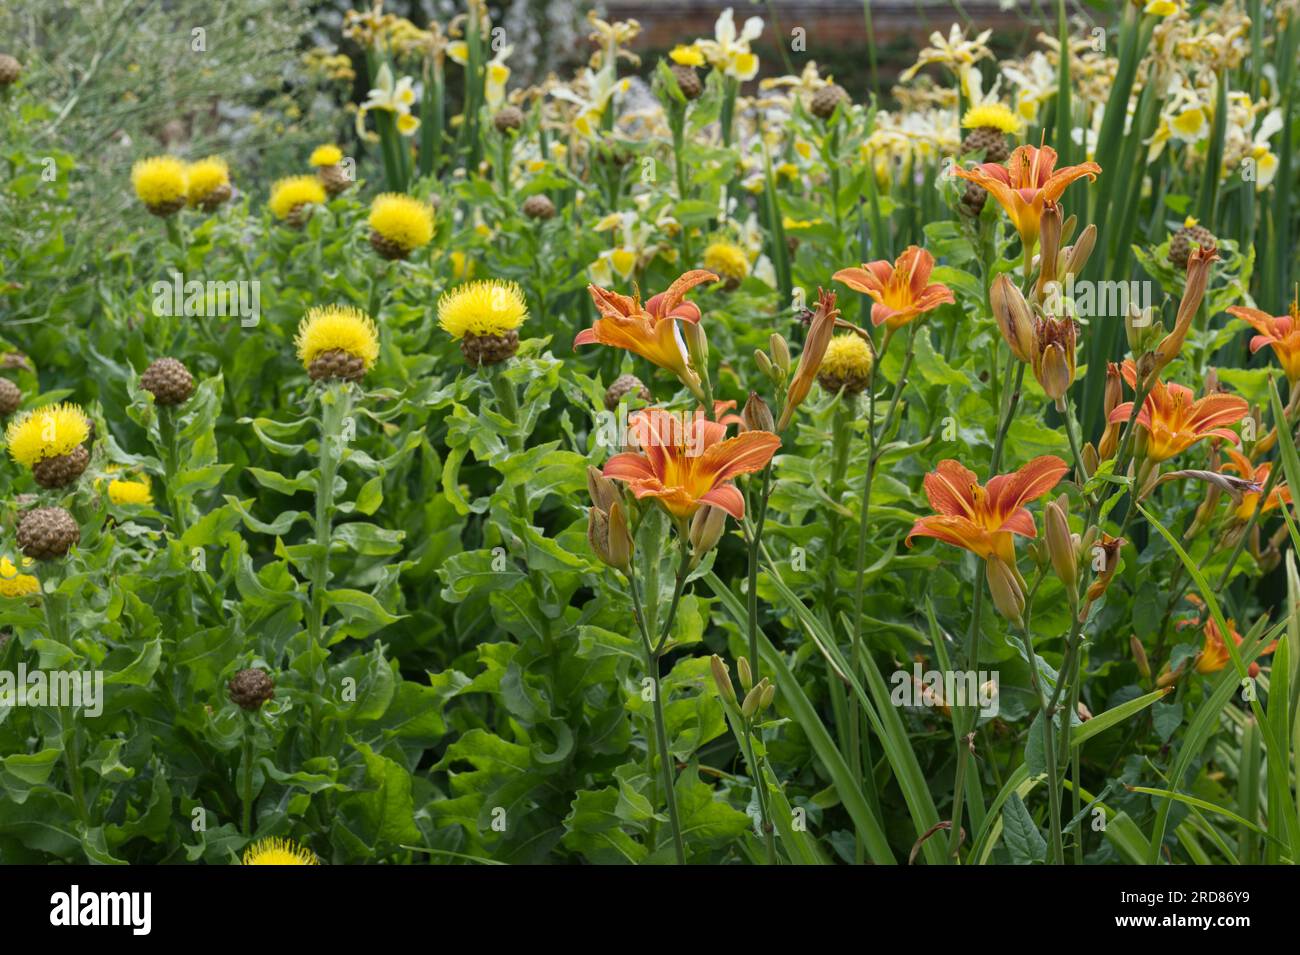 Leuchtend gelbe Distel wie Blüten von Centaurea macrocephala, orangefarbene Tageslilien und blassgelbe Iris im britischen Garten Juni Stockfoto